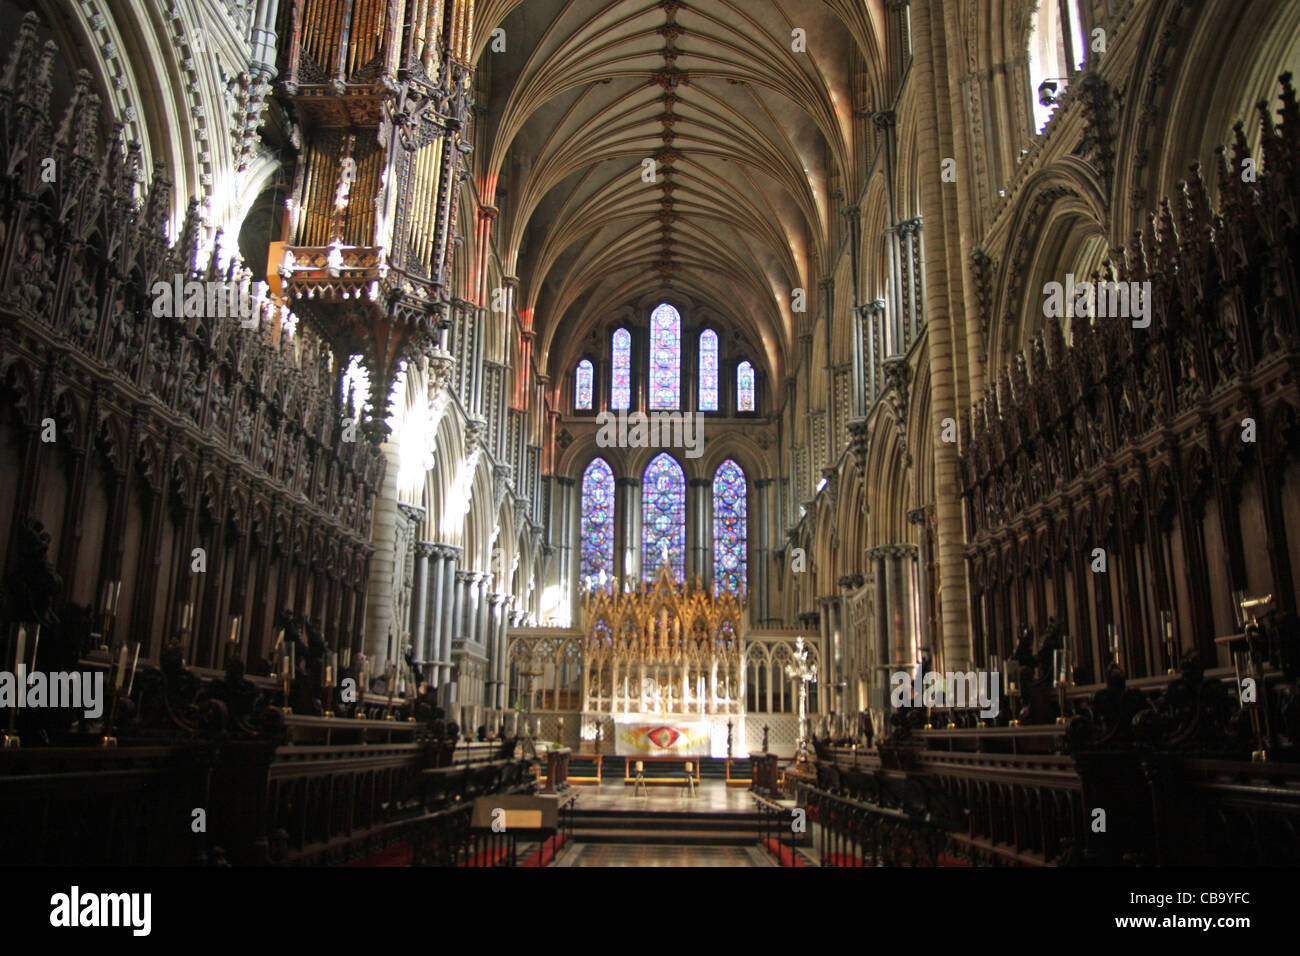 Intérieur de la cathédrale d'Ely dans le Cambridgeshire, Angleterre Banque D'Images